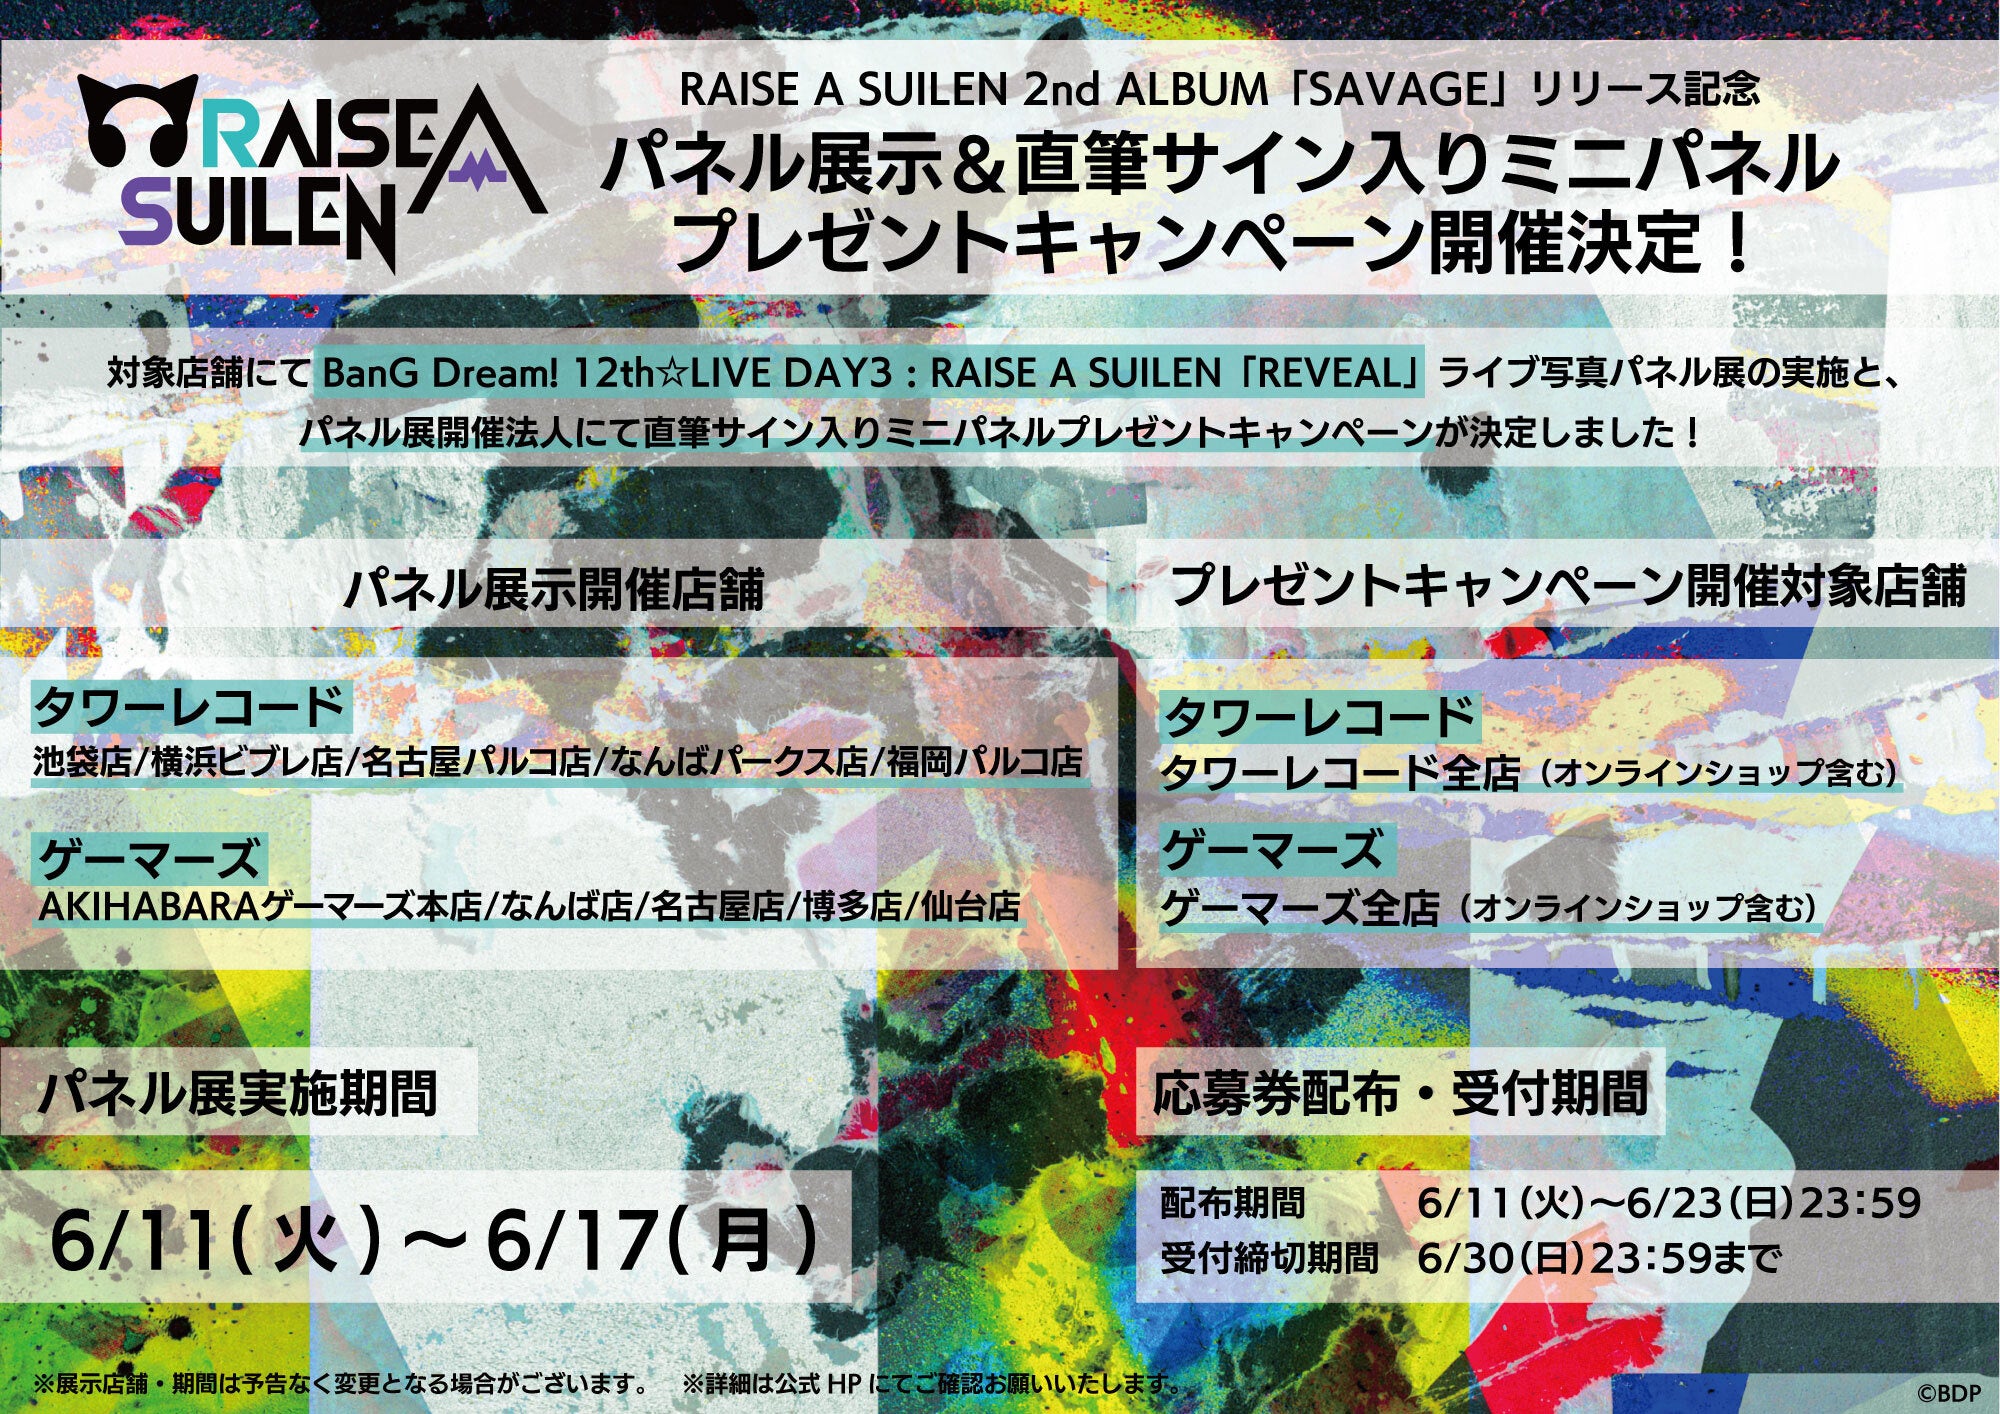 RAISE A SUILEN 2nd Album「SAVAGE」本日リリース！